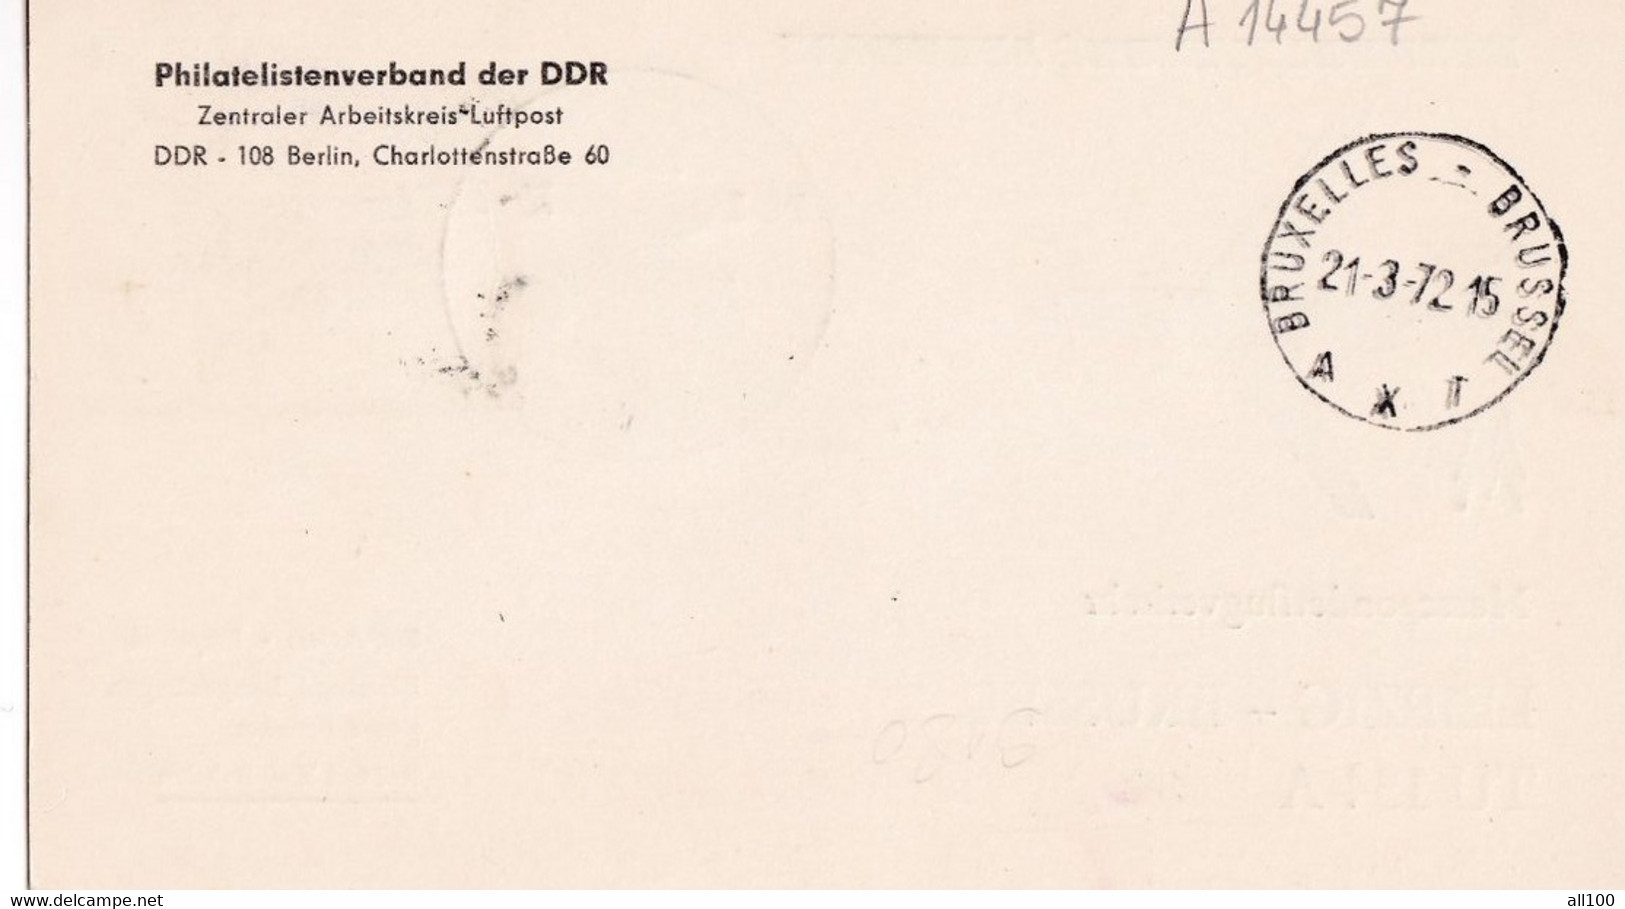 A14457 - CESKOSLOVENNSKE AEROLINE LEIPZIG - BRUSSEL 1972 SONDERFLUGVERKEHR MESSESONDERFLUGVERKEHR - Briefe U. Dokumente